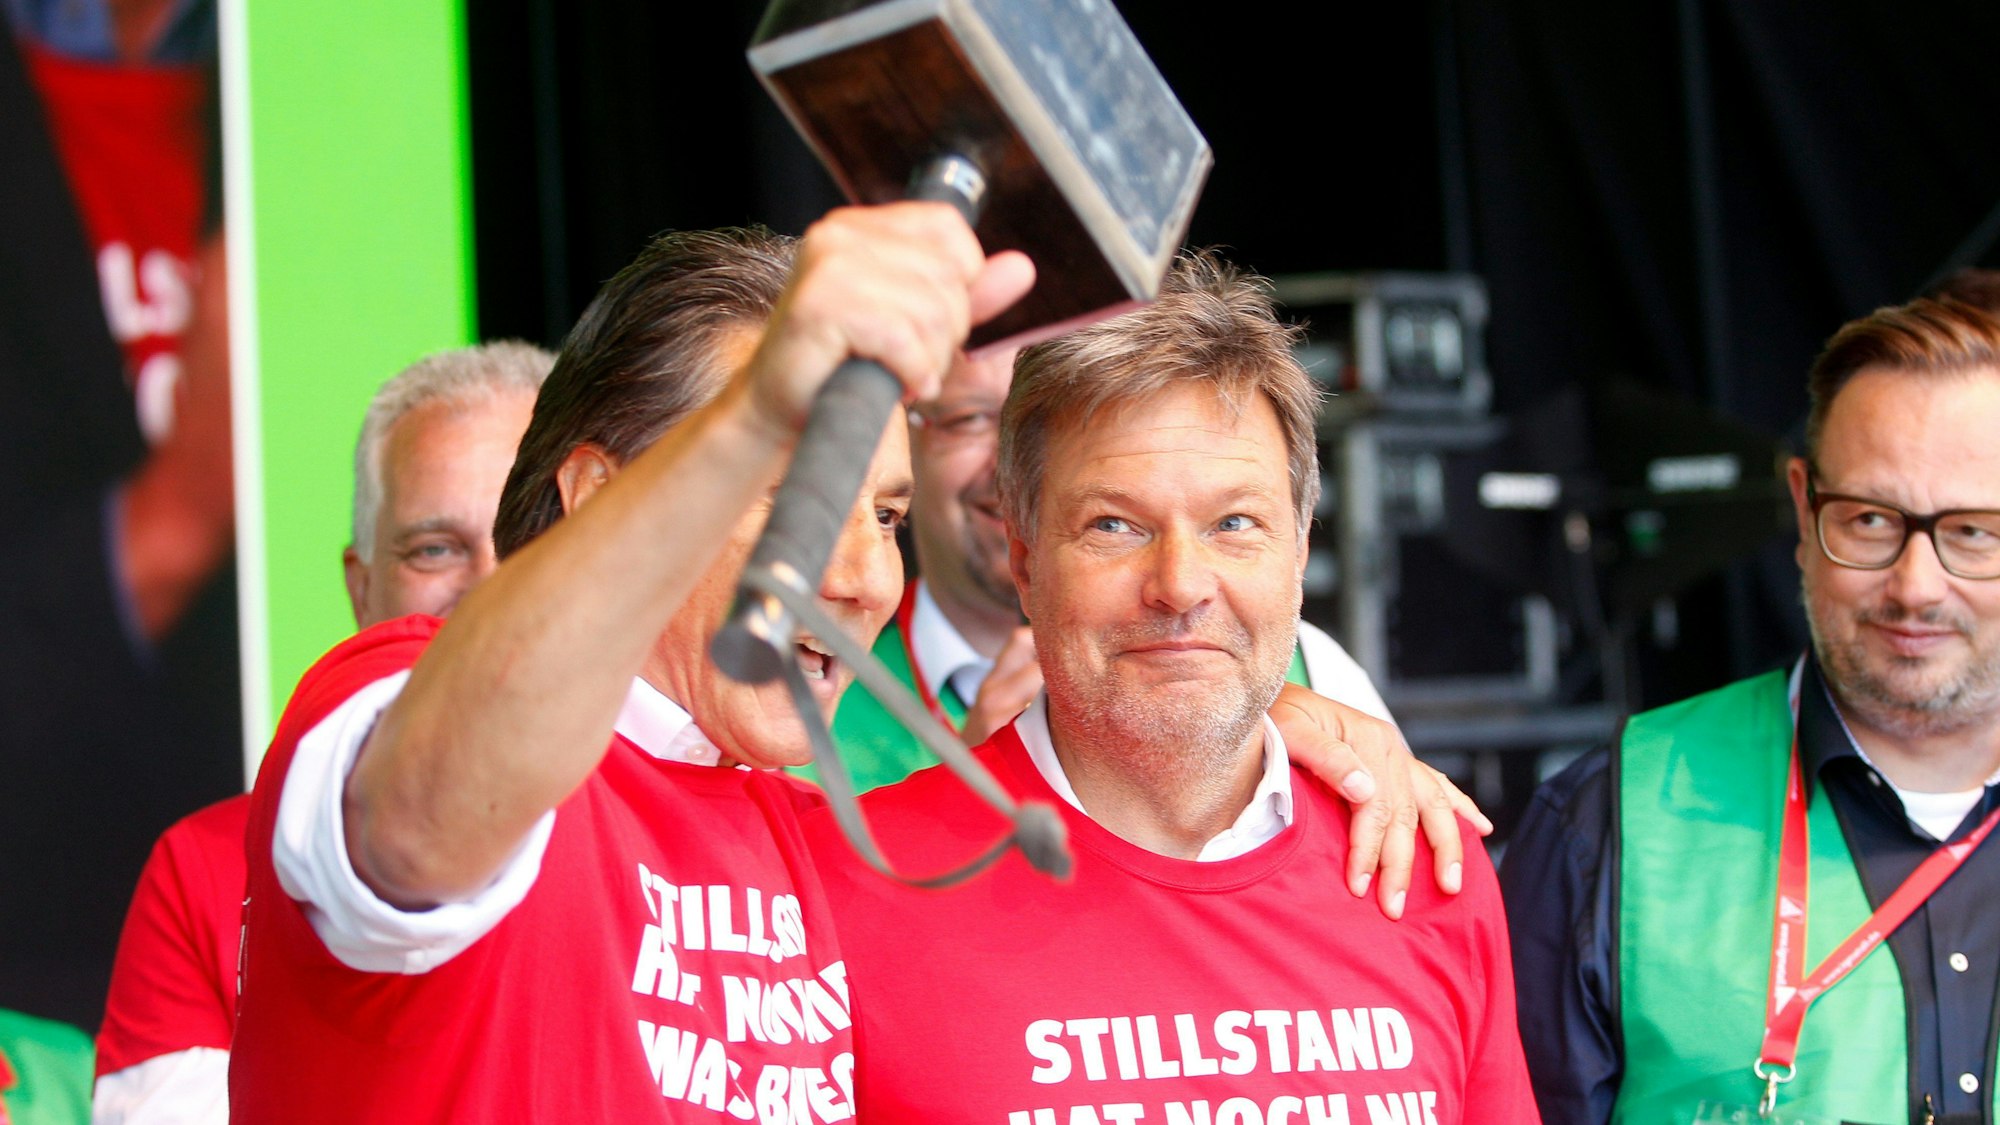 Der Betriebsratsvorsitzender von ThyssenKrupp, zeigt während der Großdemonstration von Stahlarbeitern bei Thyssenkrupp Robert Habeck einen Stahlhammer.